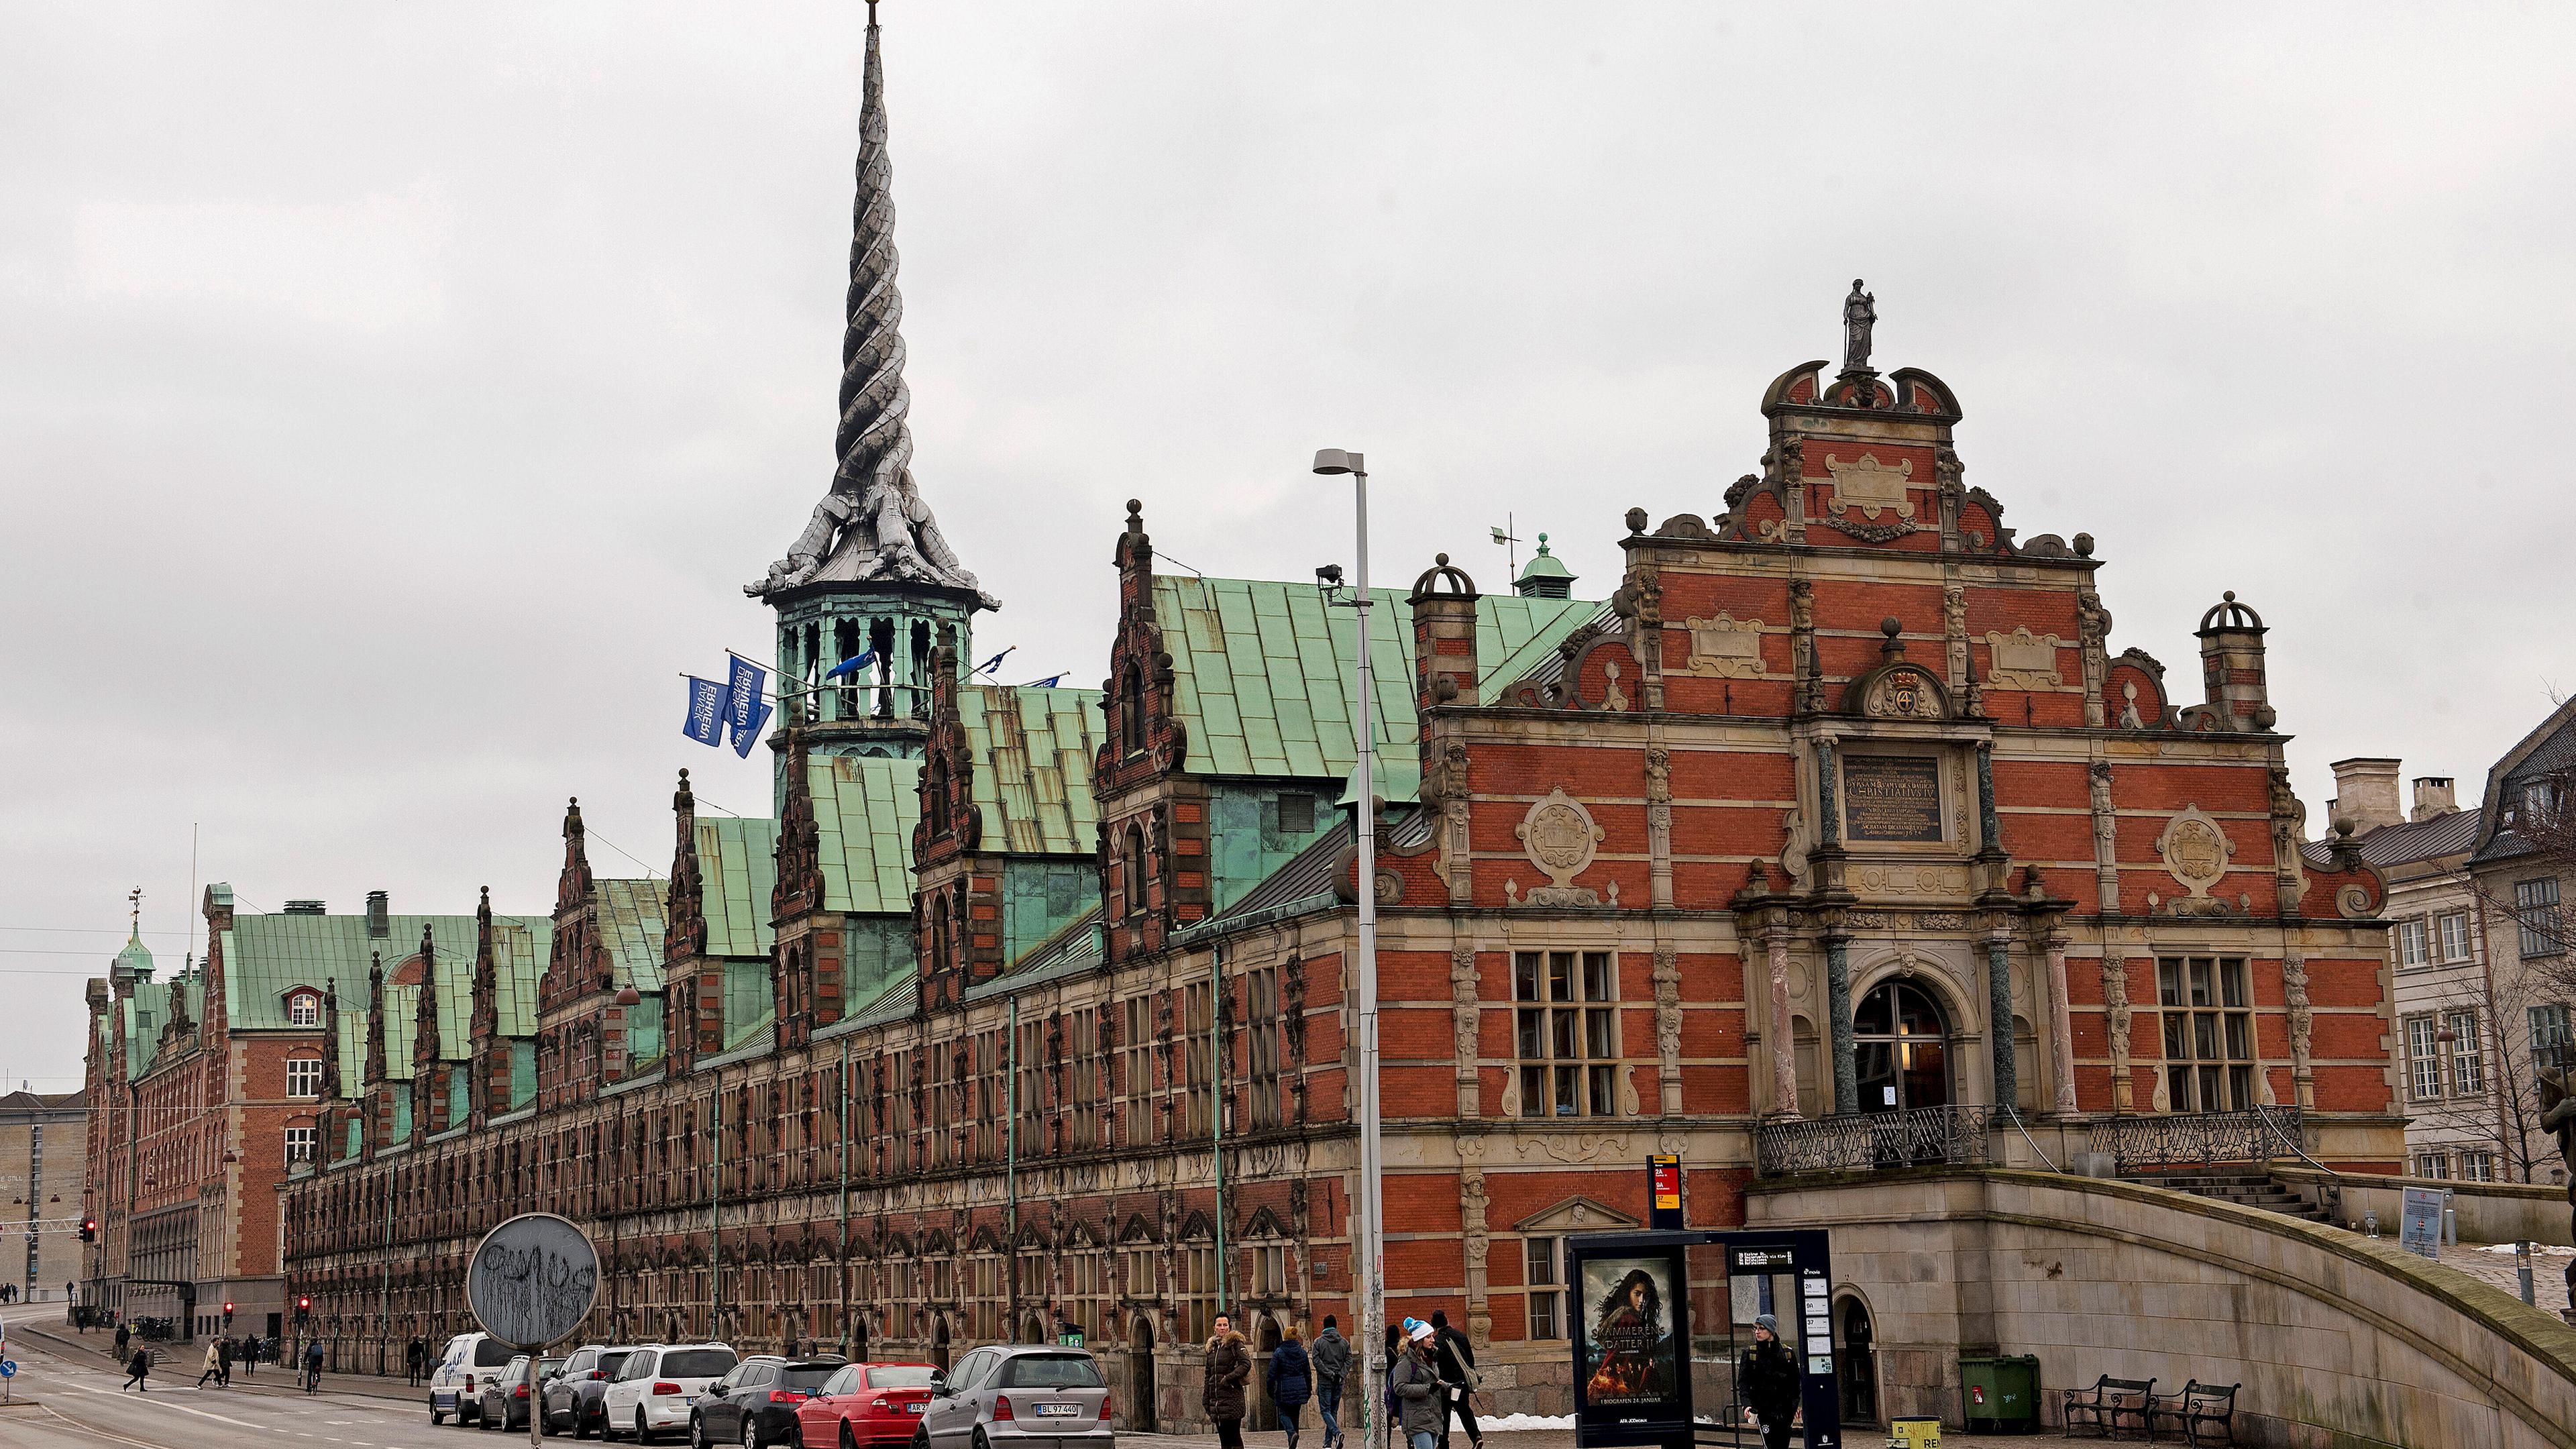 Archivbild: Ein Blick auf die Alte Börse in Kopenhagen